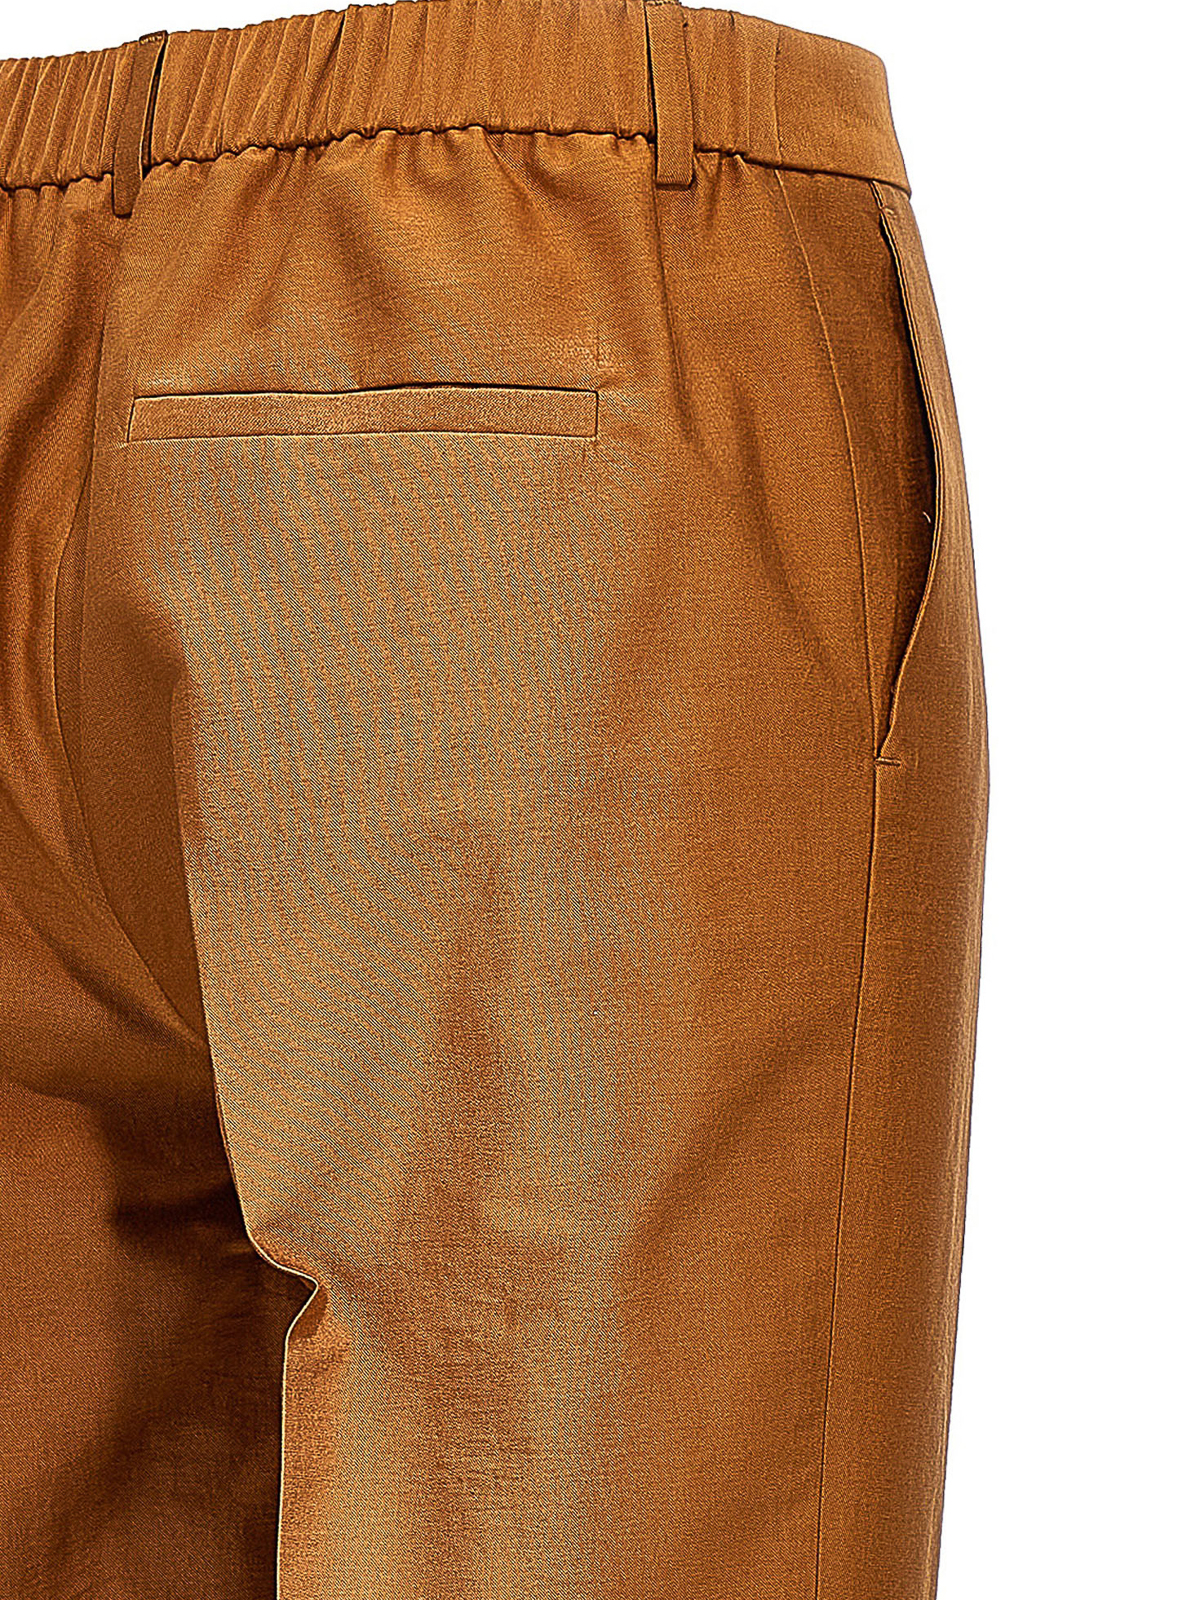 hn-p34-013 | Cotton twill Gusset Half pants | Yohji Yamamoto | Online Store  - FASCINATE THE R OSAKA